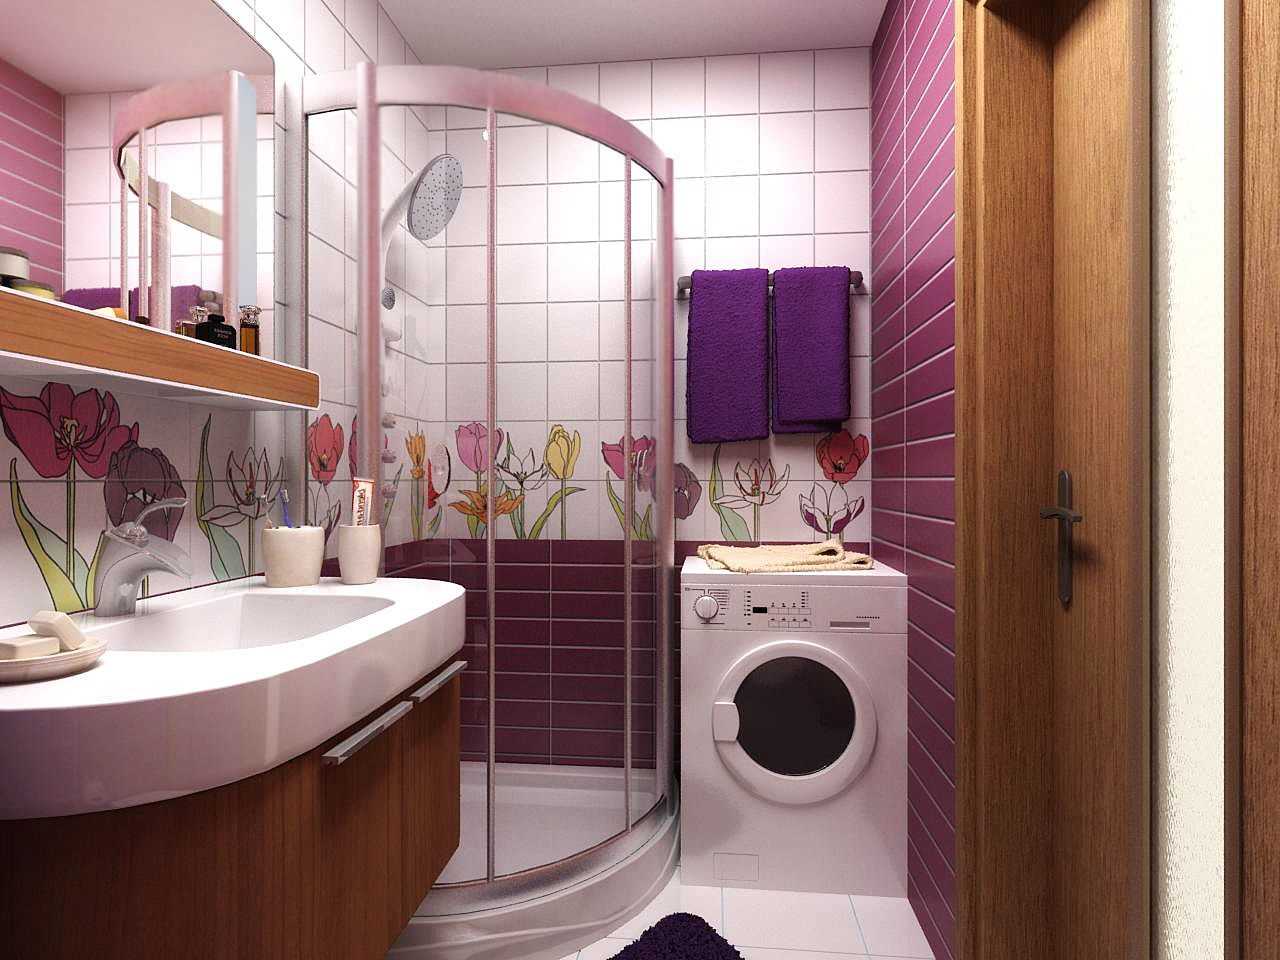 versie van de ongebruikelijke stijl van de badkamer 2017